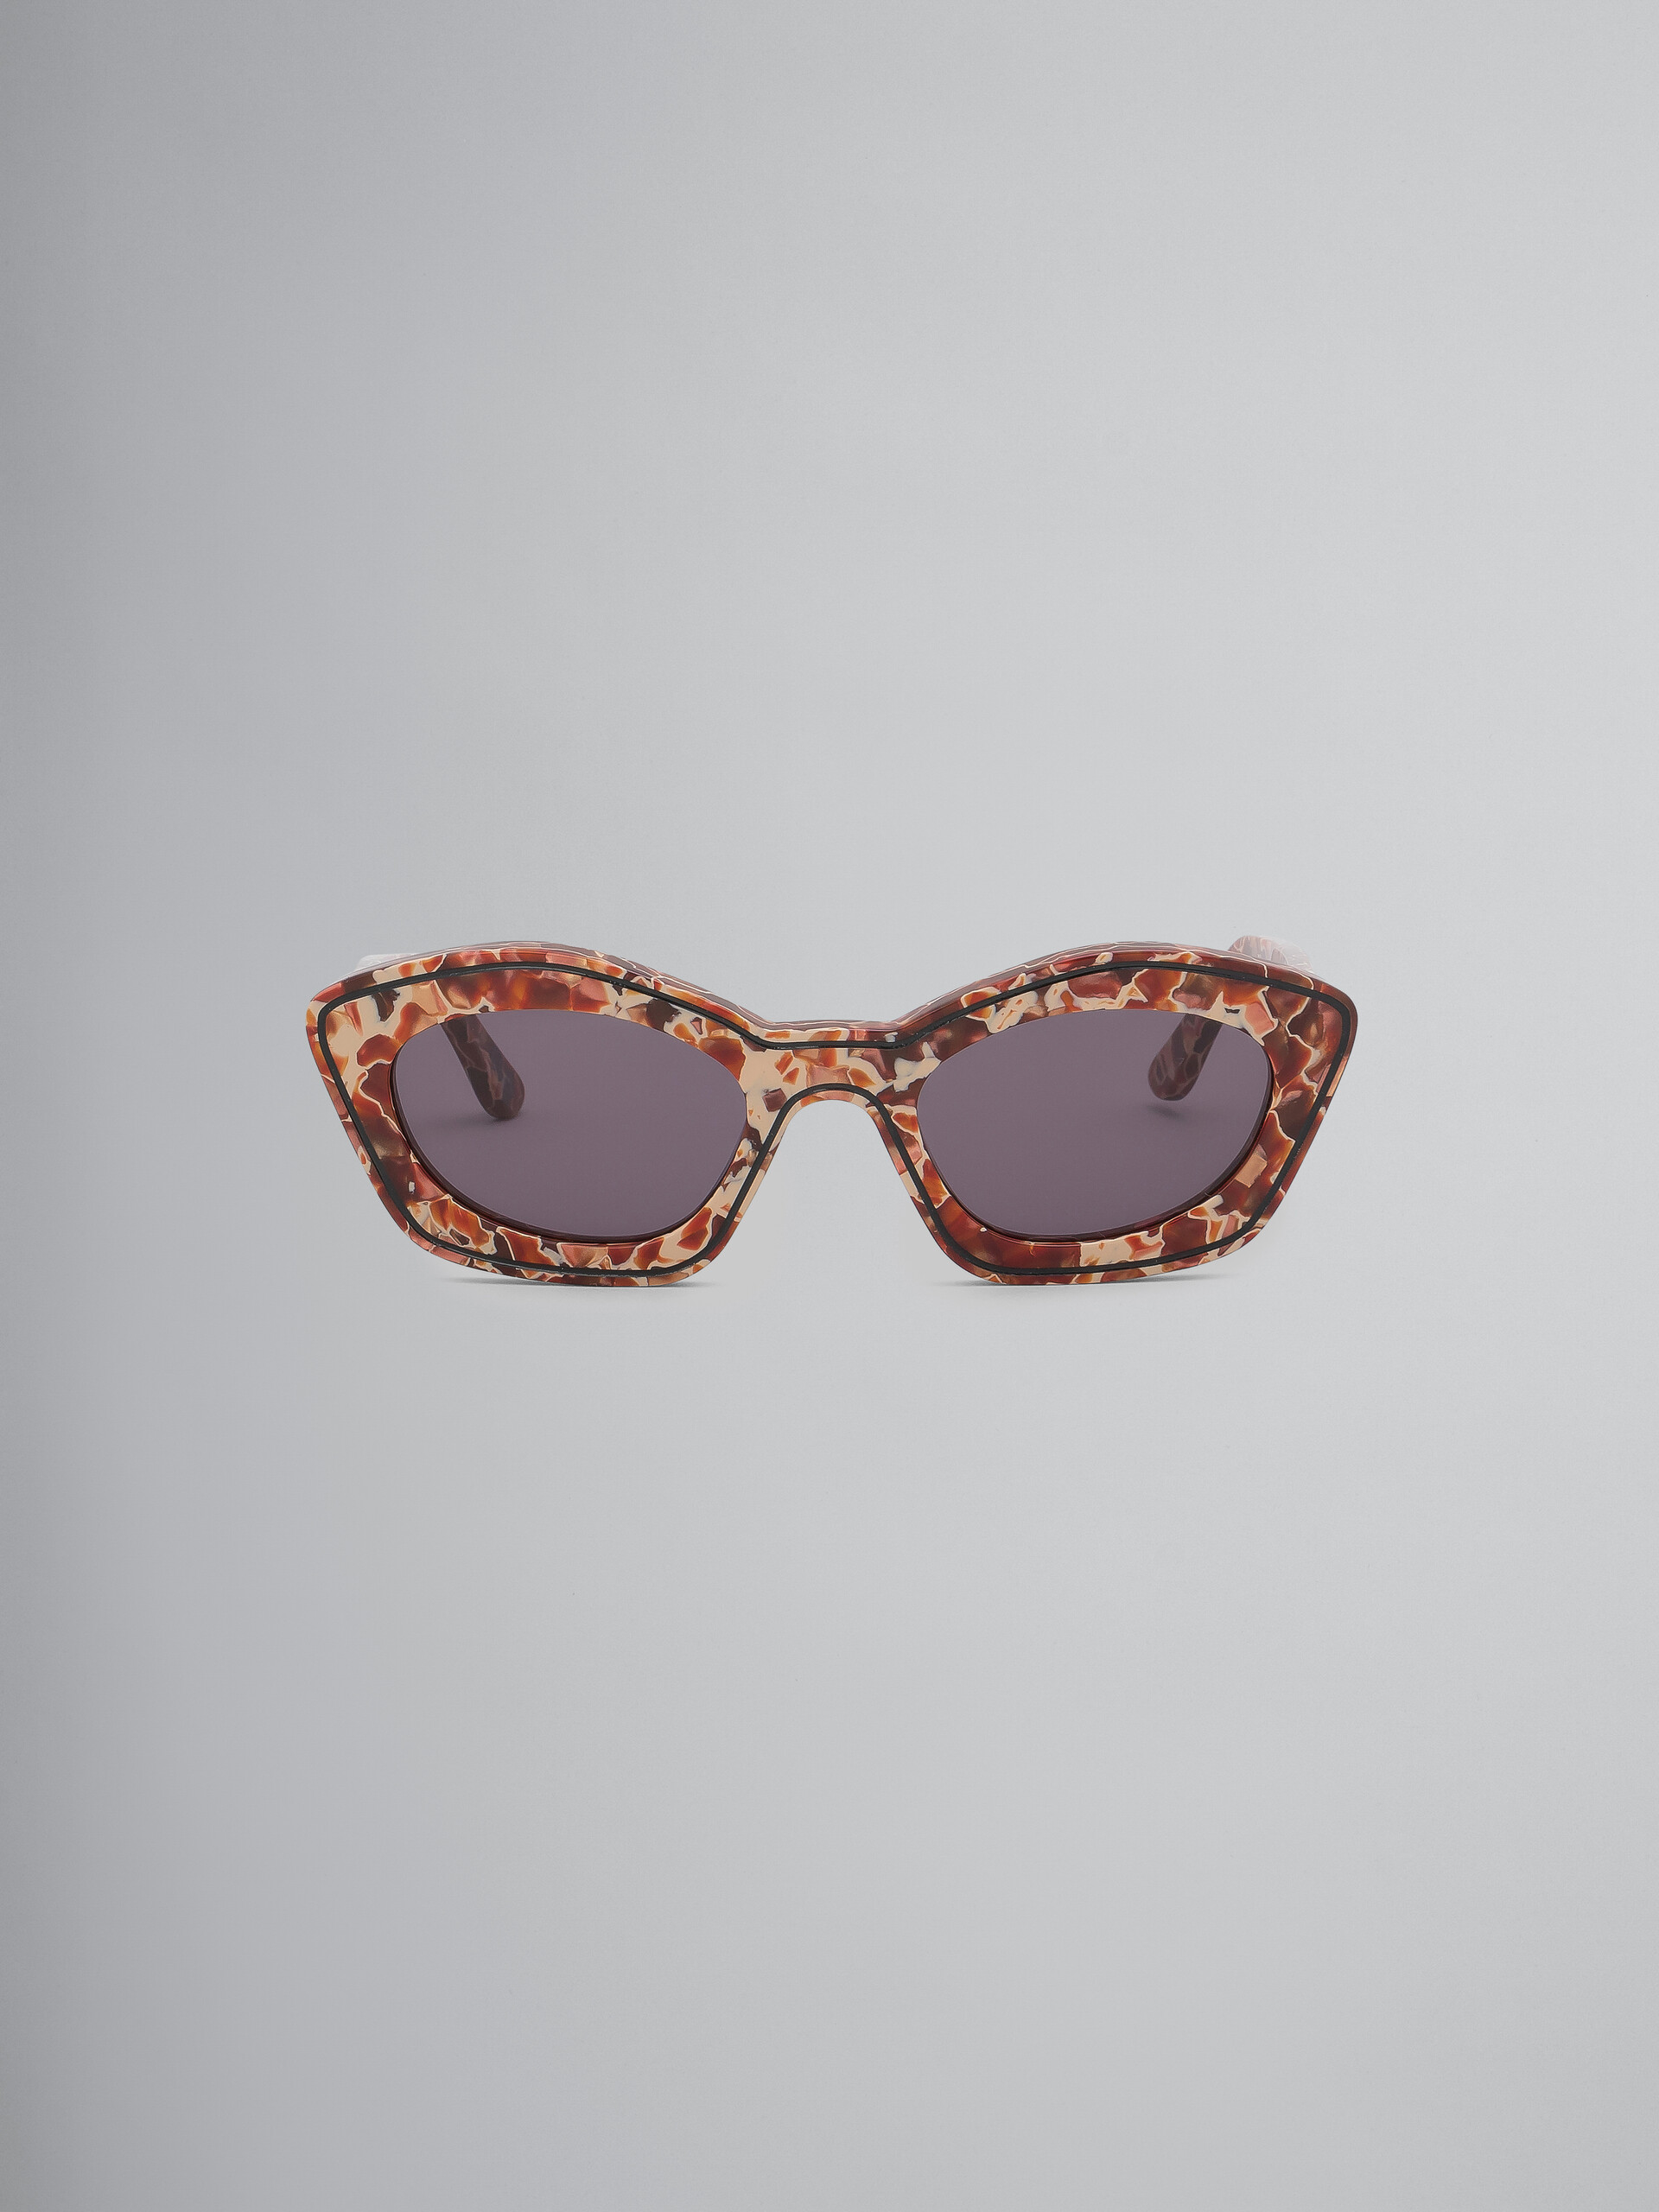 Lava Kea Island sunglasses - Optical - Image 1